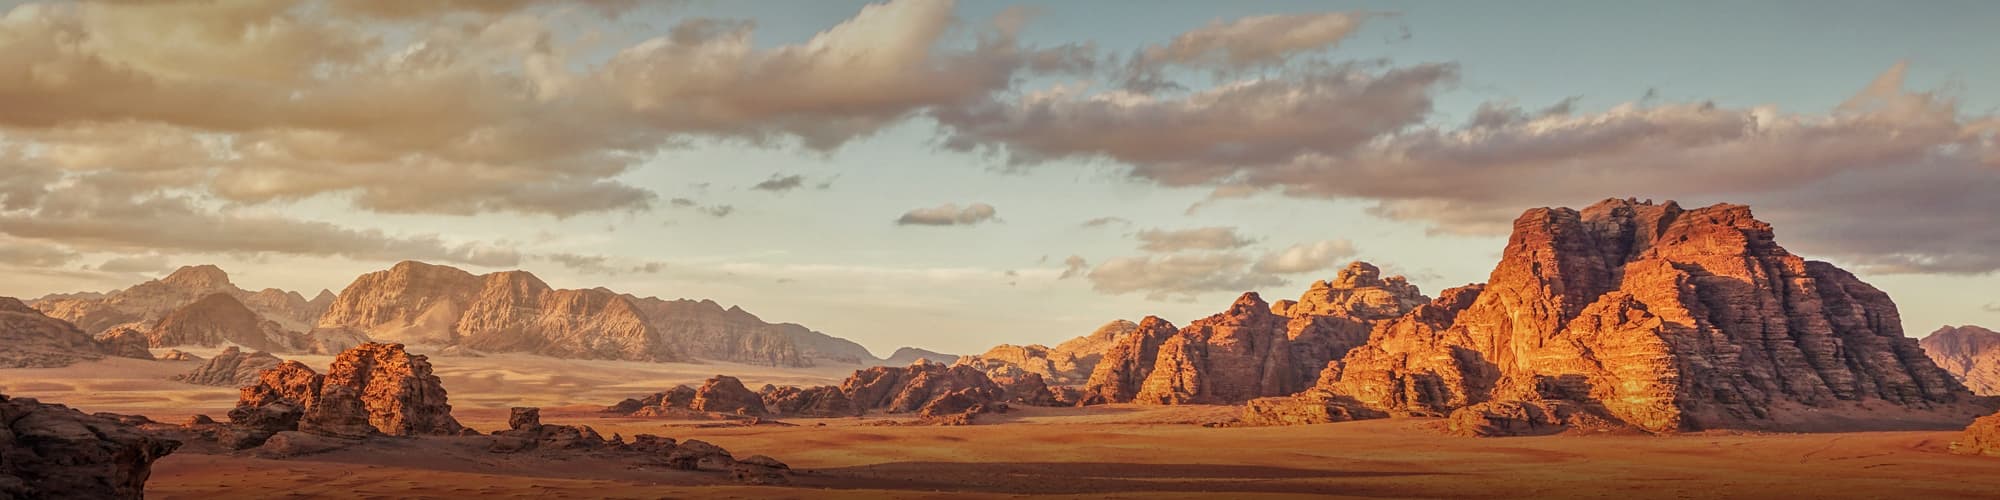 Découverte Wadi Rum © Lubo Ivanko